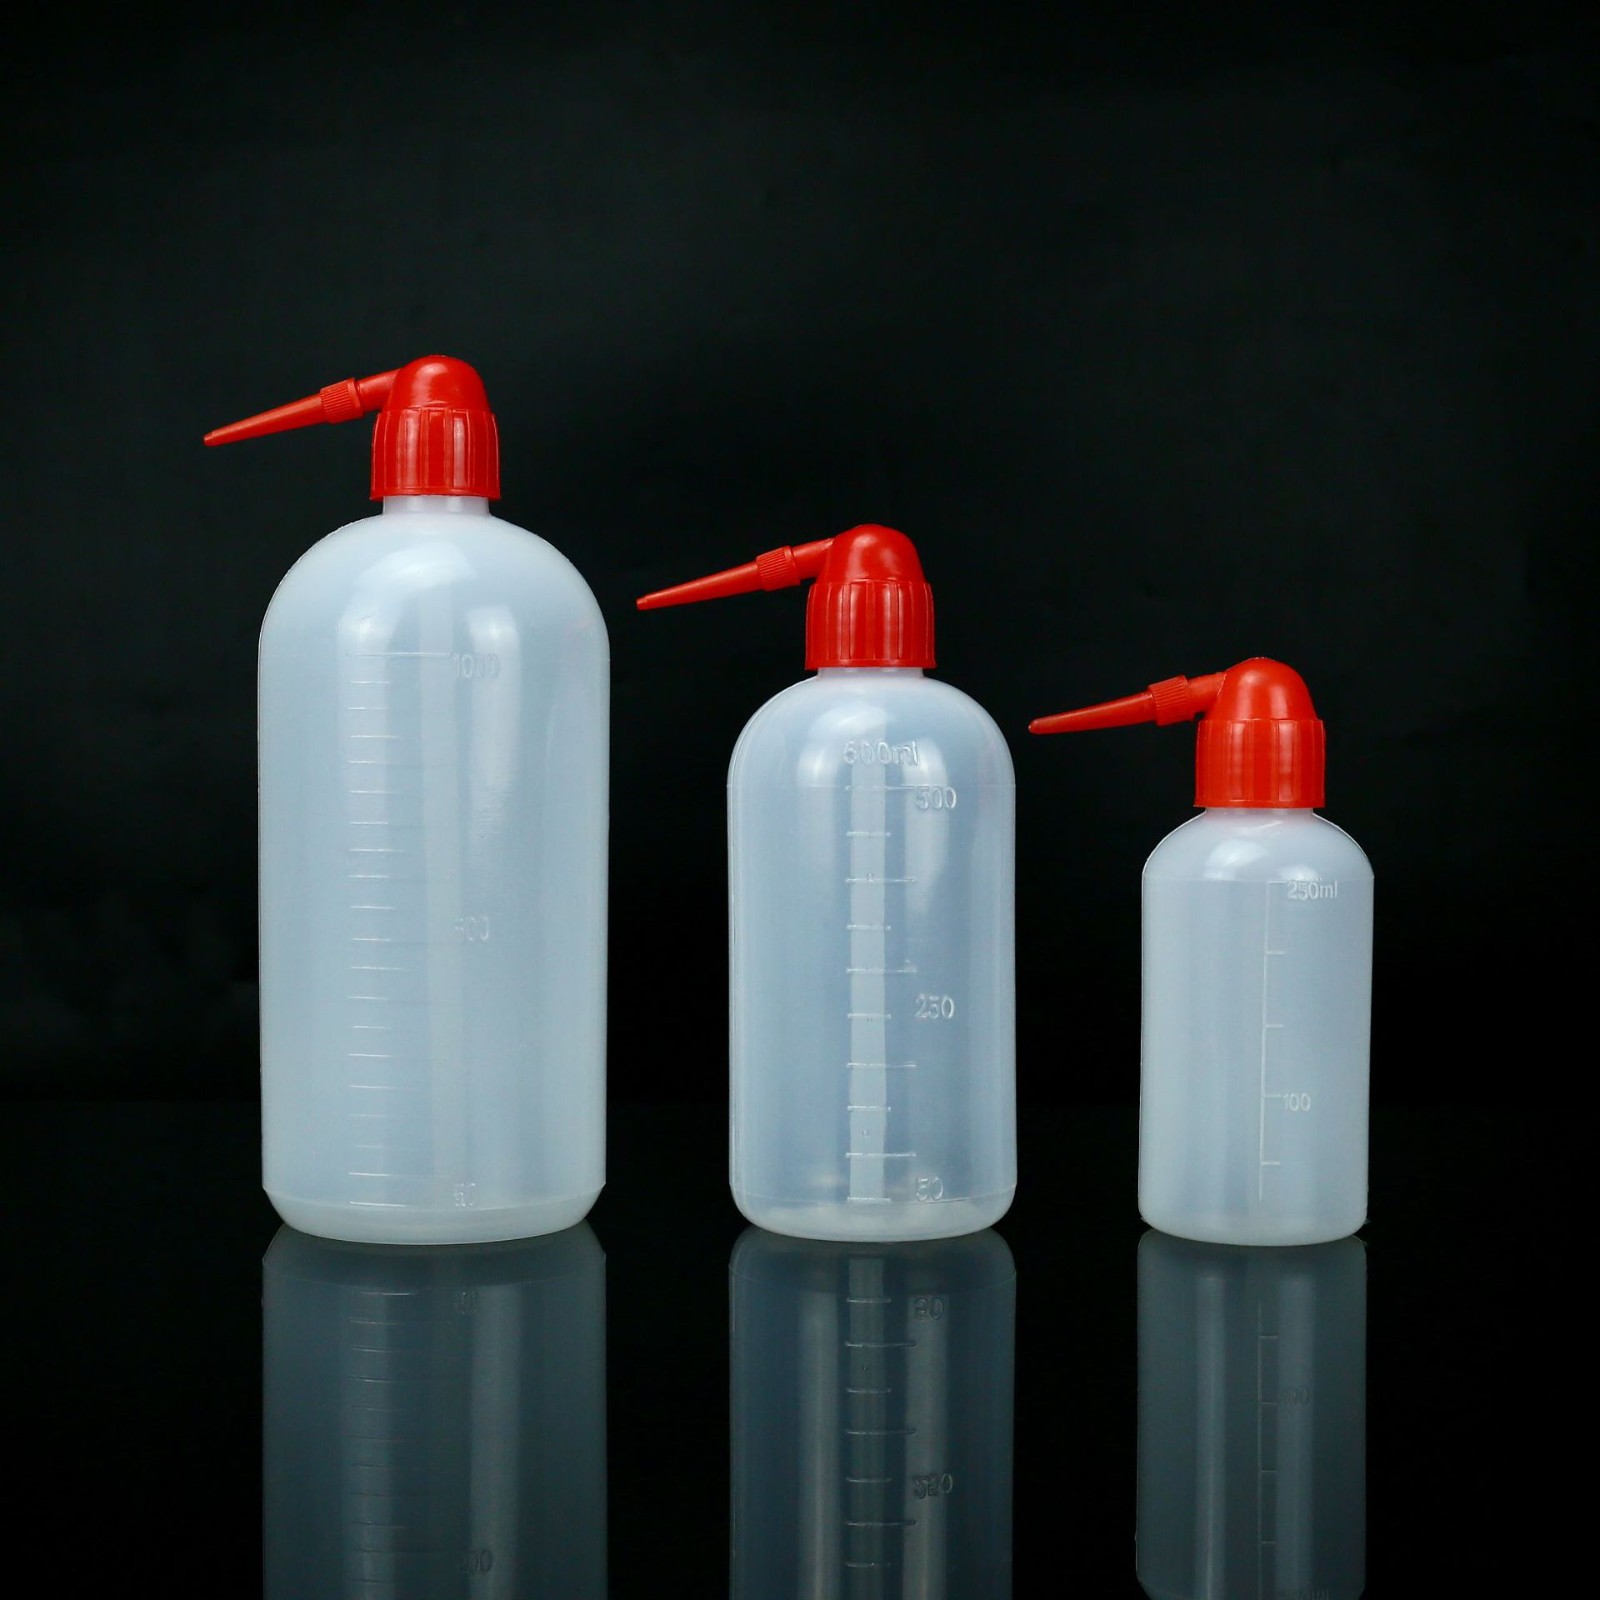 RH RH 青岛库 塑料洗瓶 250ML 红头，400个/箱，食品级聚乙烯 250ML 红头，400个/箱，食品级聚乙烯 青岛库 250ML 红头，400个/箱，食品级聚乙烯 青岛库